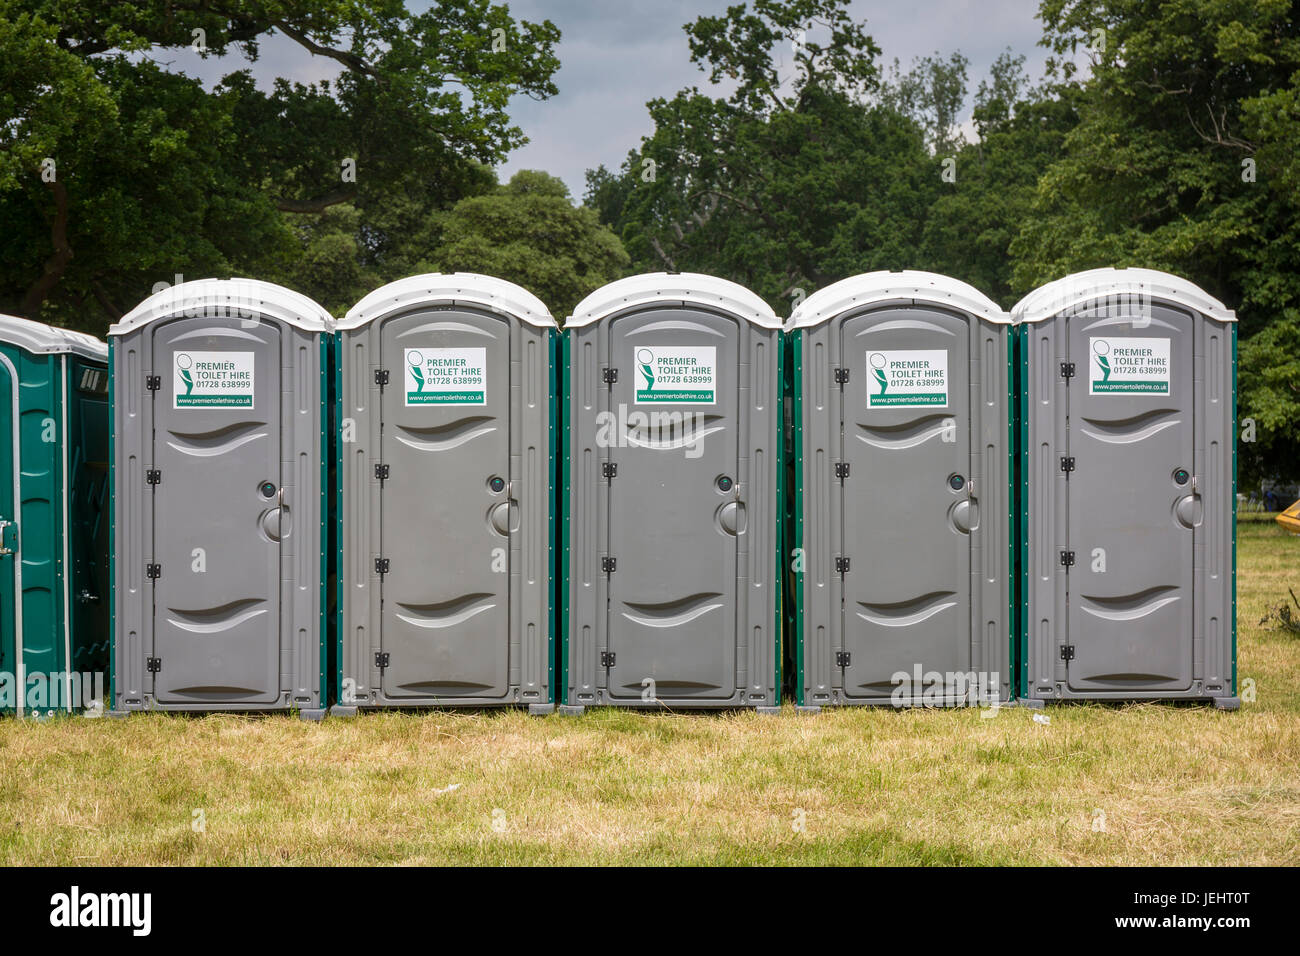 Eine Reihe von mobilen Toiletten bei einer öffentlichen Veranstaltung, Norfolk. Stockfoto